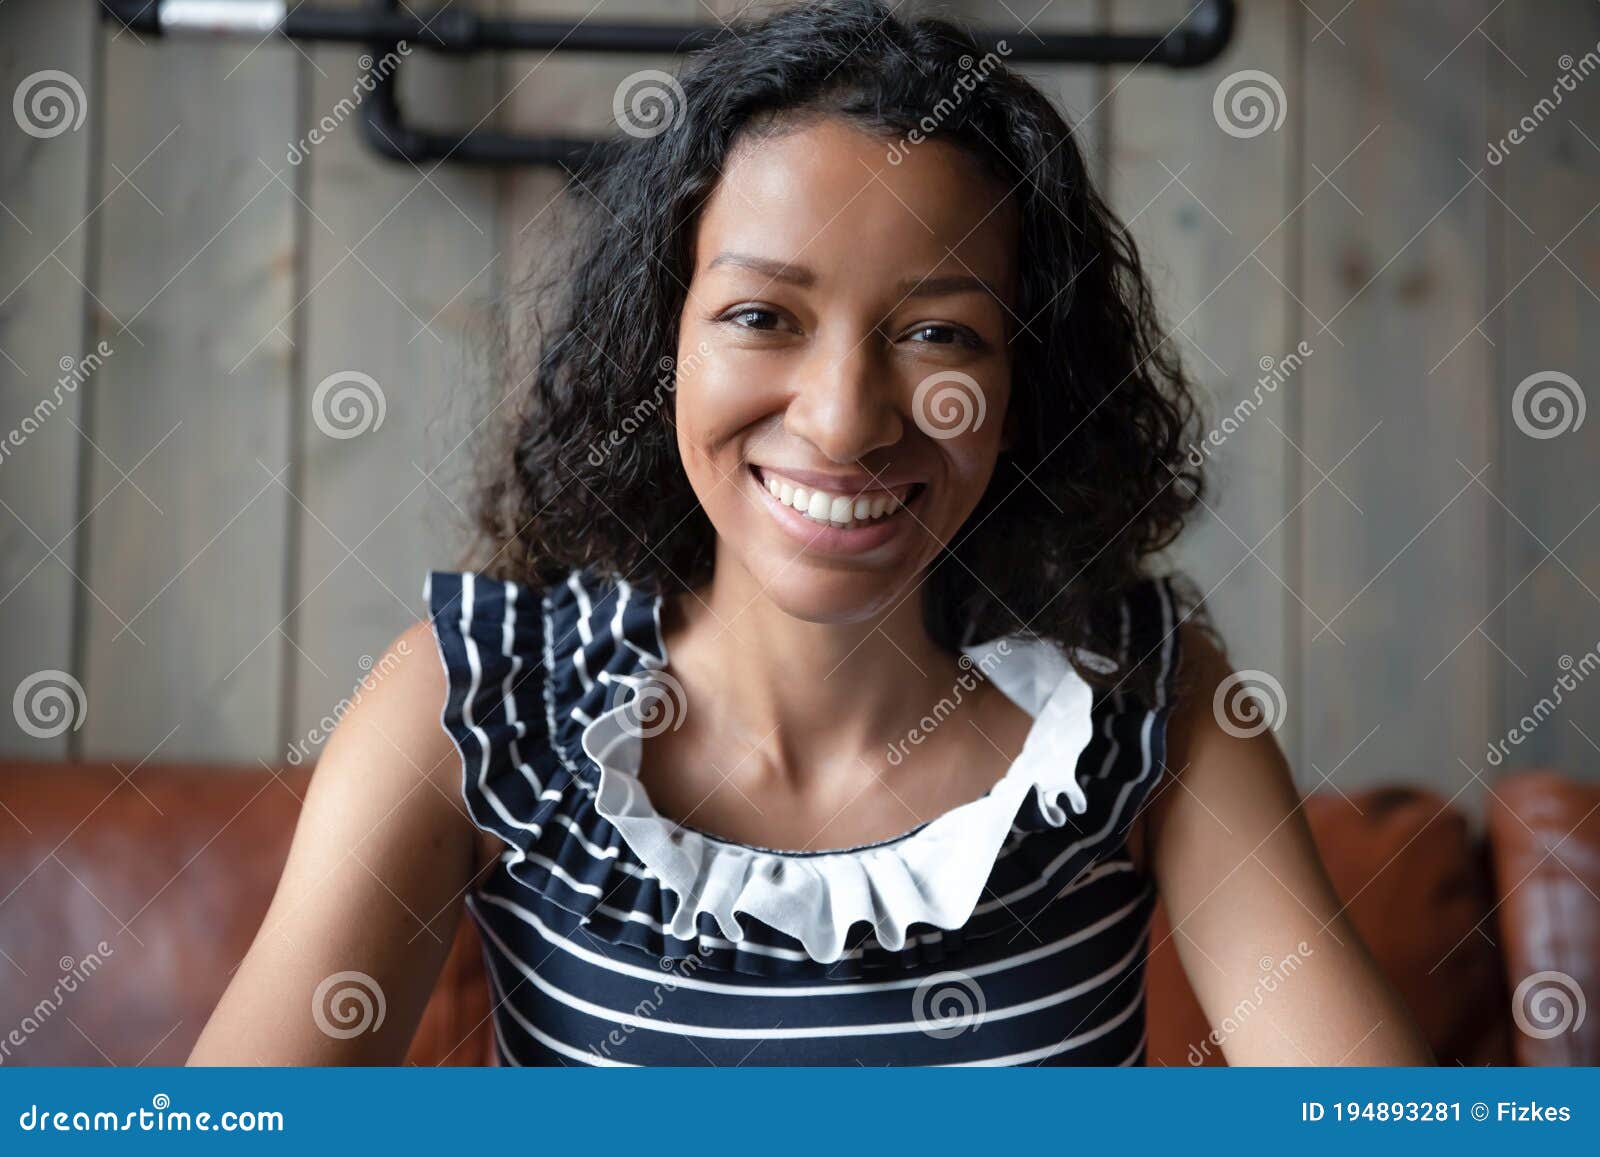 stunning dark skinned webcam girl at work